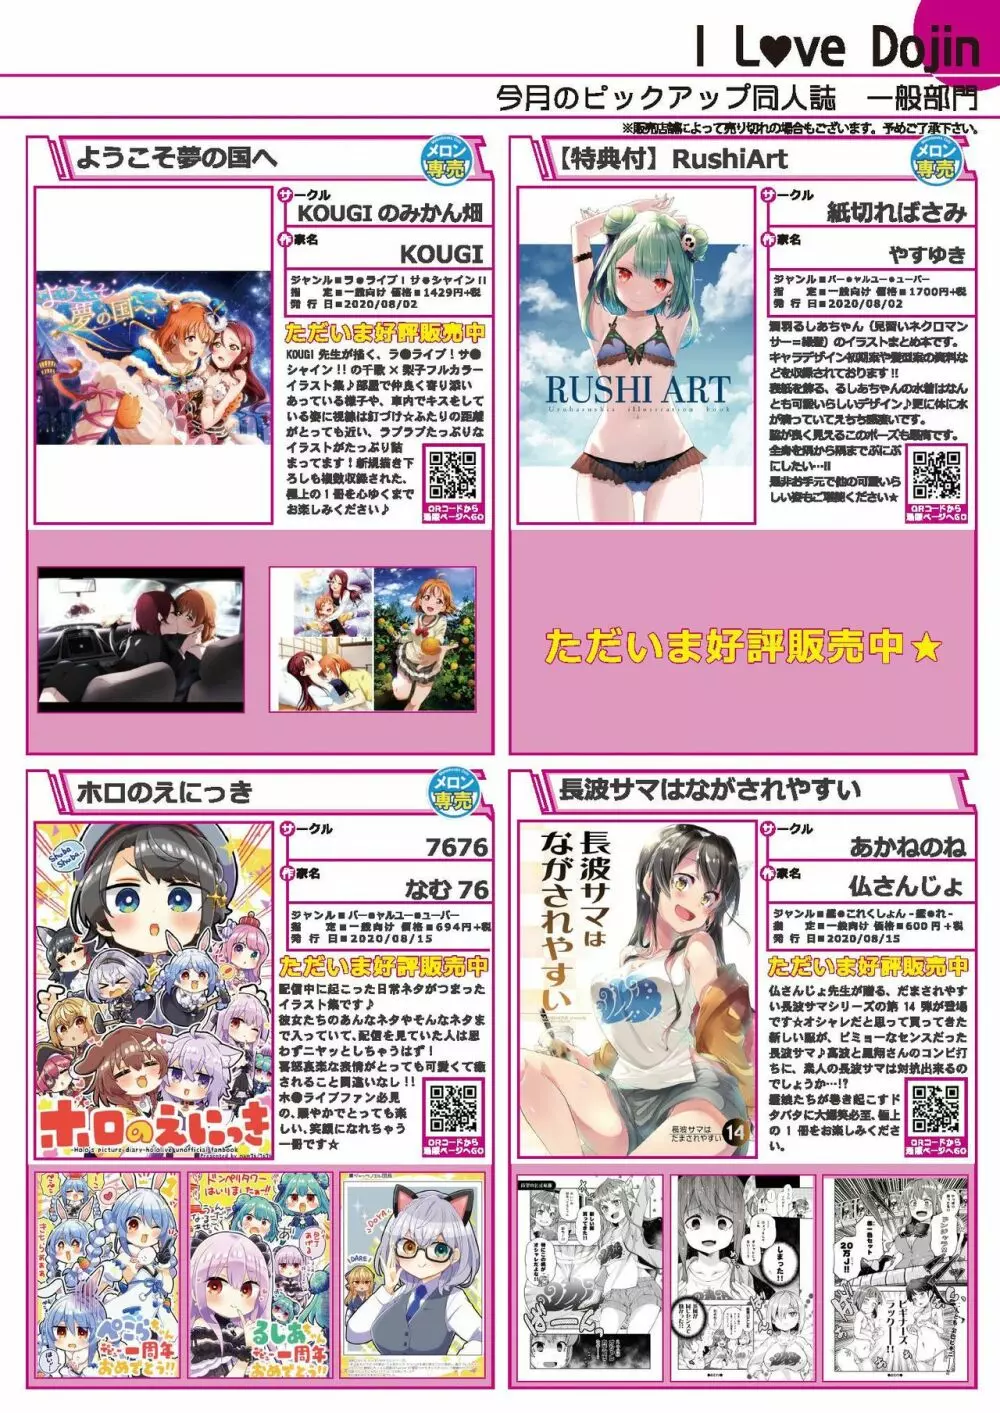 月刊うりぼうざっか店 2020年9月4日発行号 11ページ